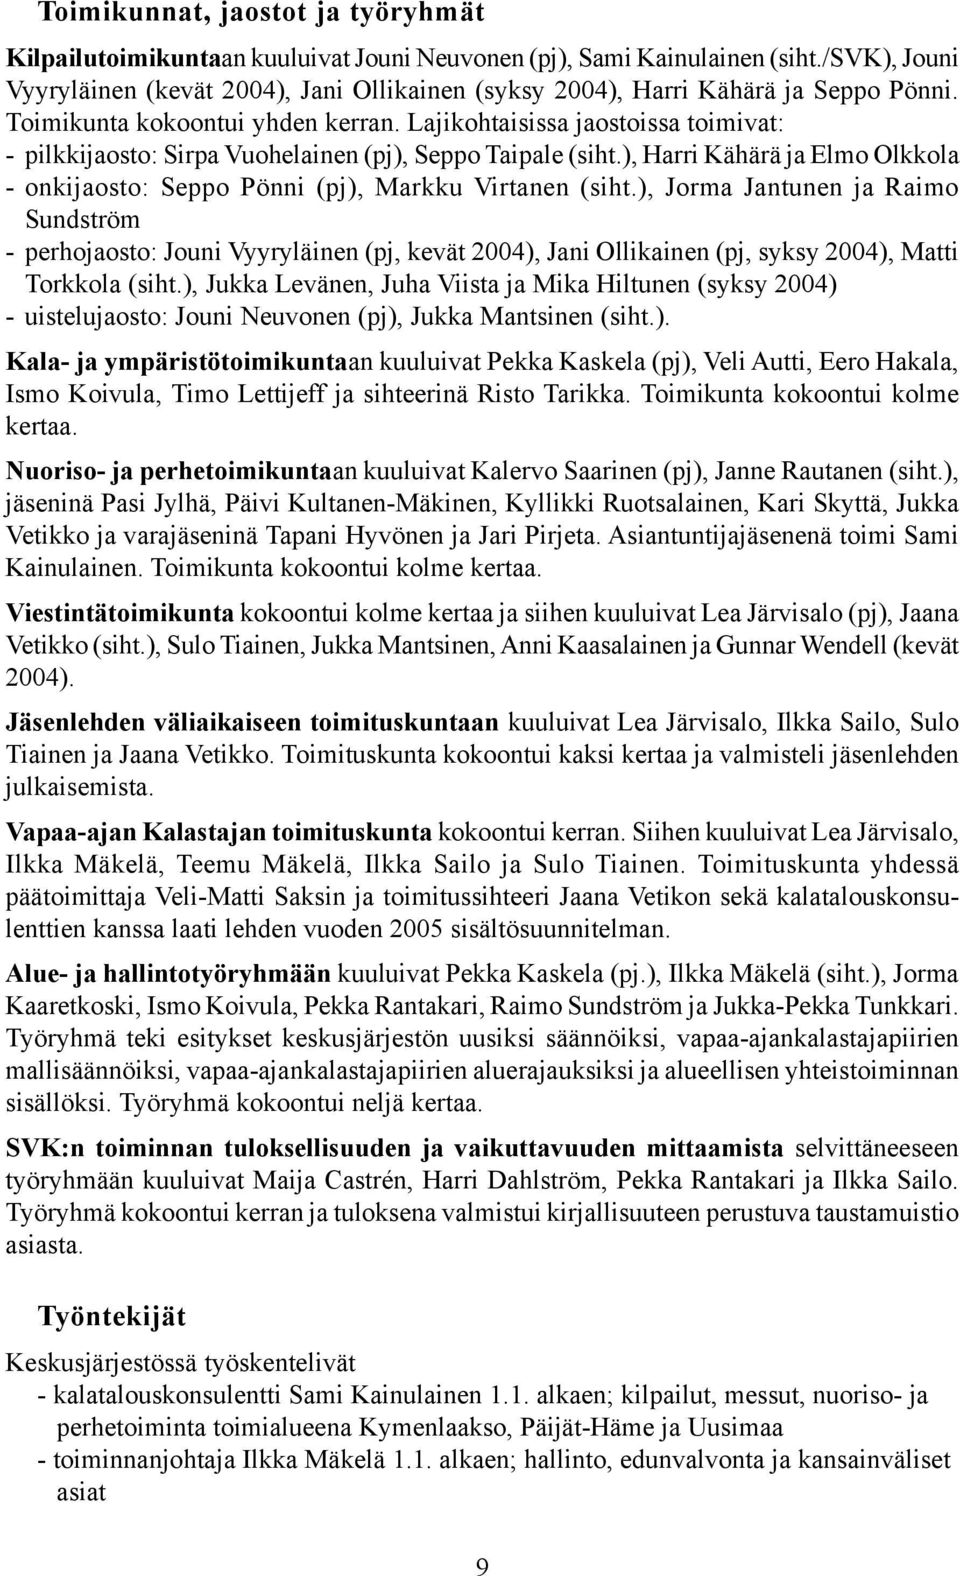 Lajikohtaisissa jaostoissa toimivat: - pilkkijaosto: Sirpa Vuohelainen (pj), Seppo Taipale (siht.), Harri Kähärä ja Elmo Olkkola - onkijaosto: Seppo Pönni (pj), Markku Virtanen (siht.